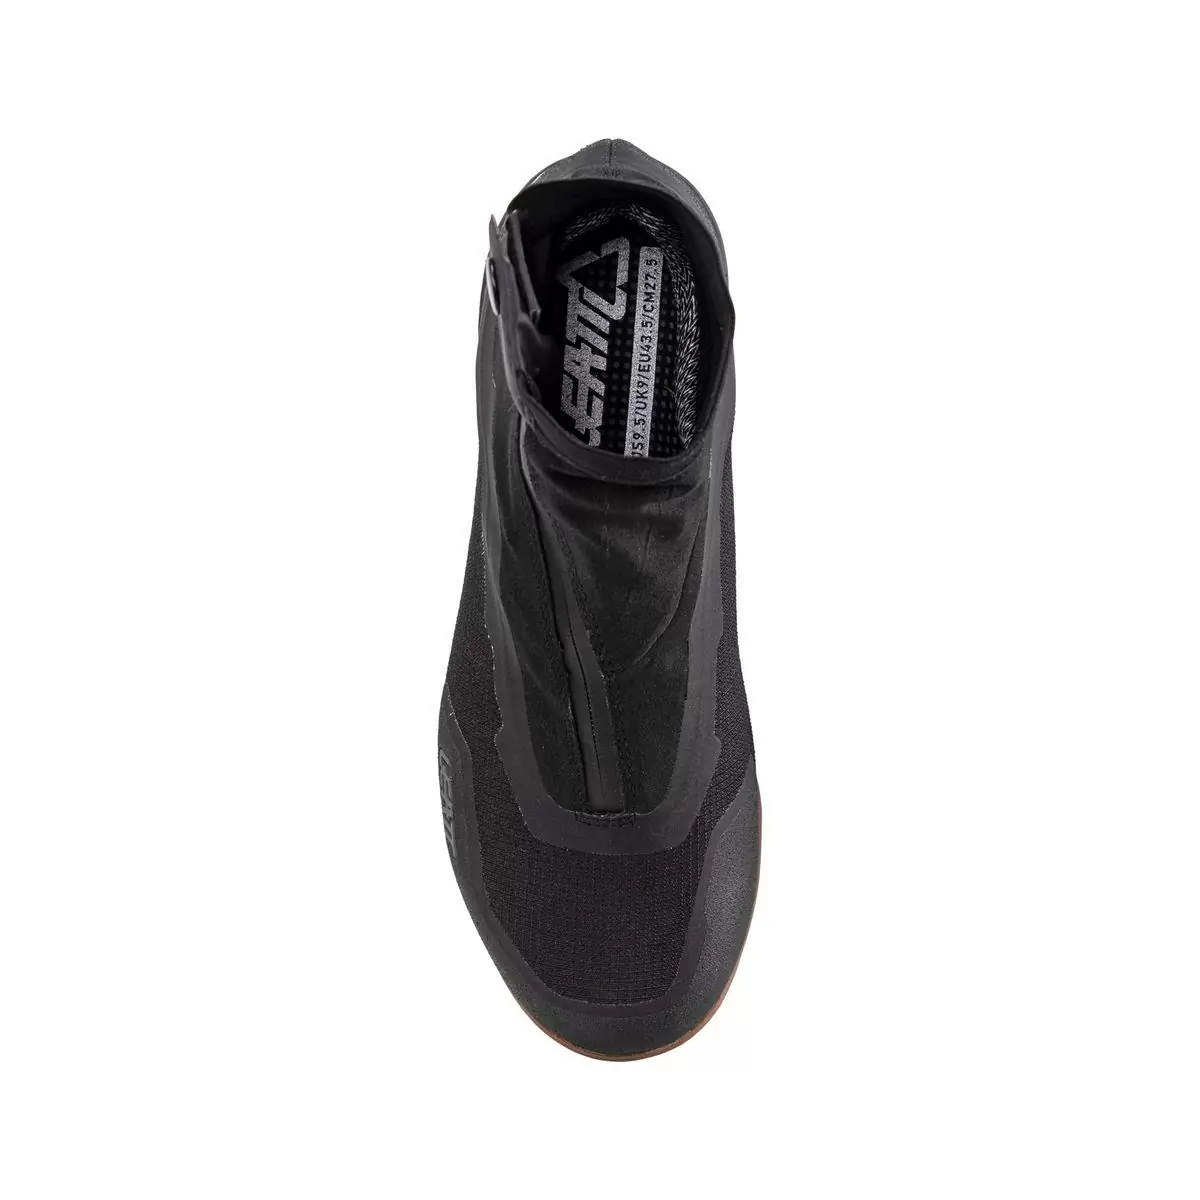 Zapatillas MTB Impermeables 7.0 HydraDri Clip Negro Talla 38.5 #2